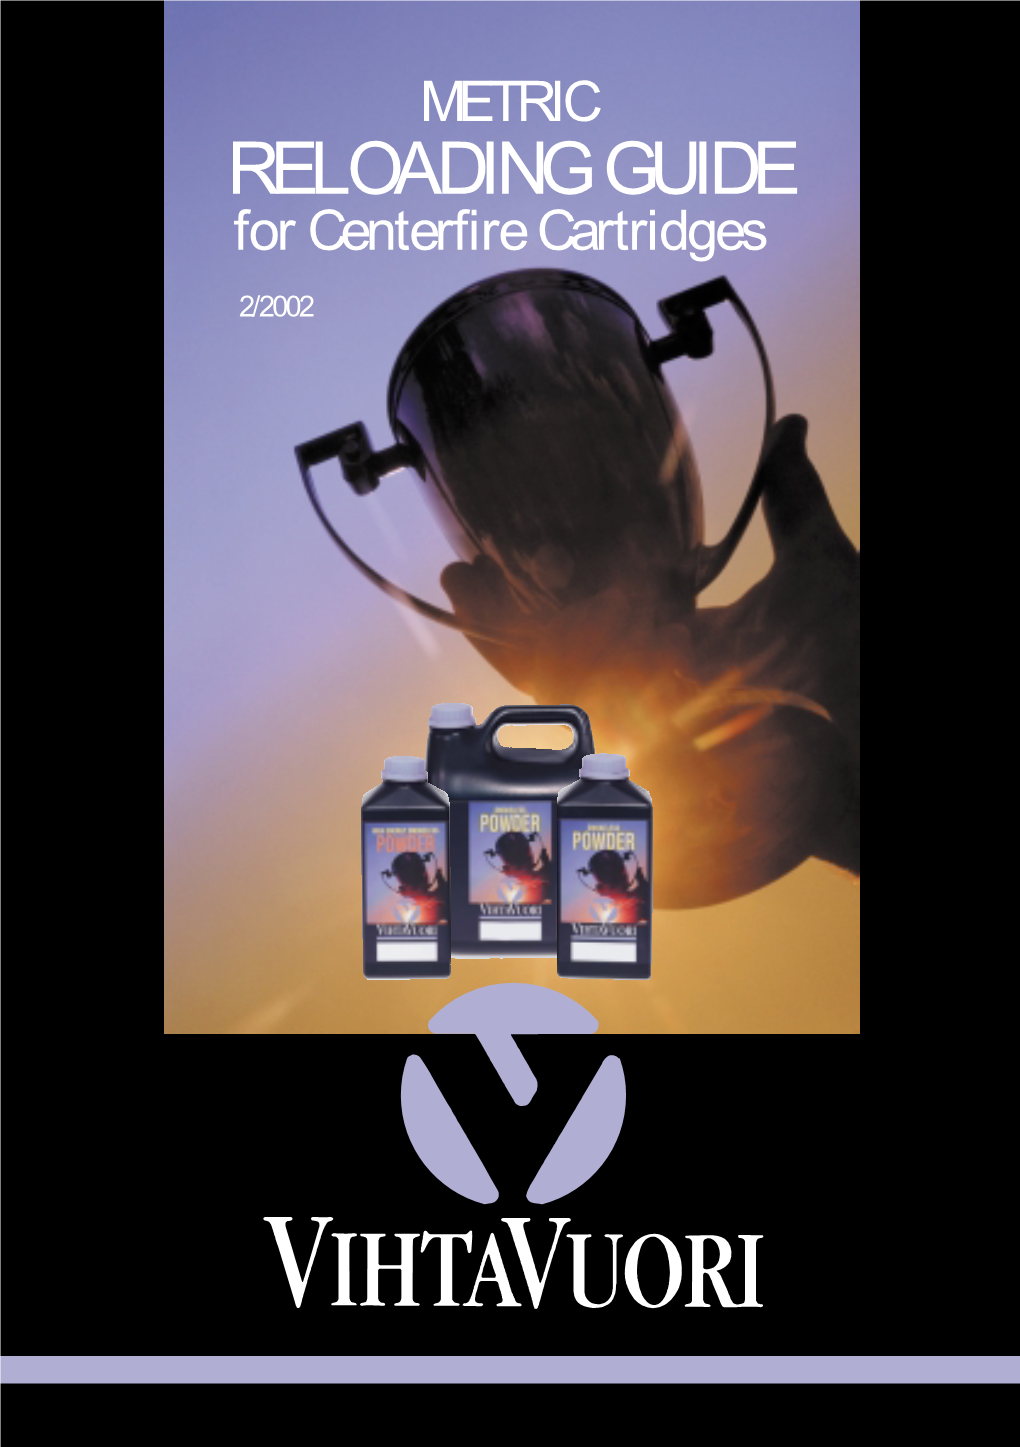 RELOADING GUIDE for Centerfire Cartridges